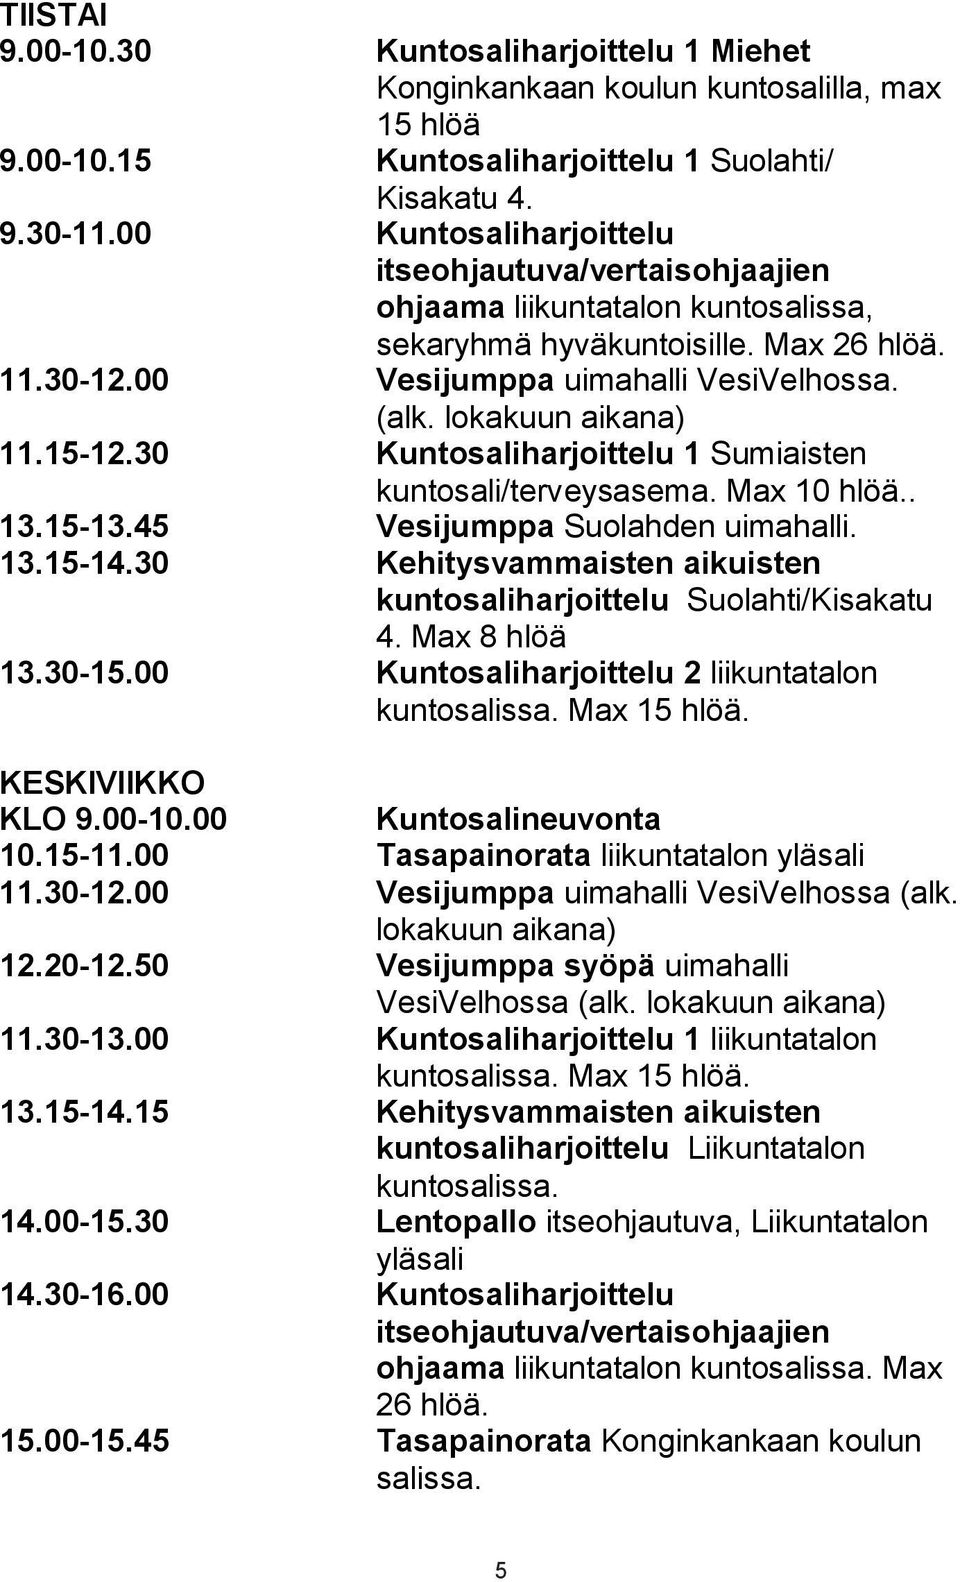 lokakuun aikana) 11.15-12.30 Kuntosaliharjoittelu 1 Sumiaisten kuntosali/terveysasema. Max 10 hlöä.. 13.15-13.45 Vesijumppa Suolahden uimahalli. 13.15-14.